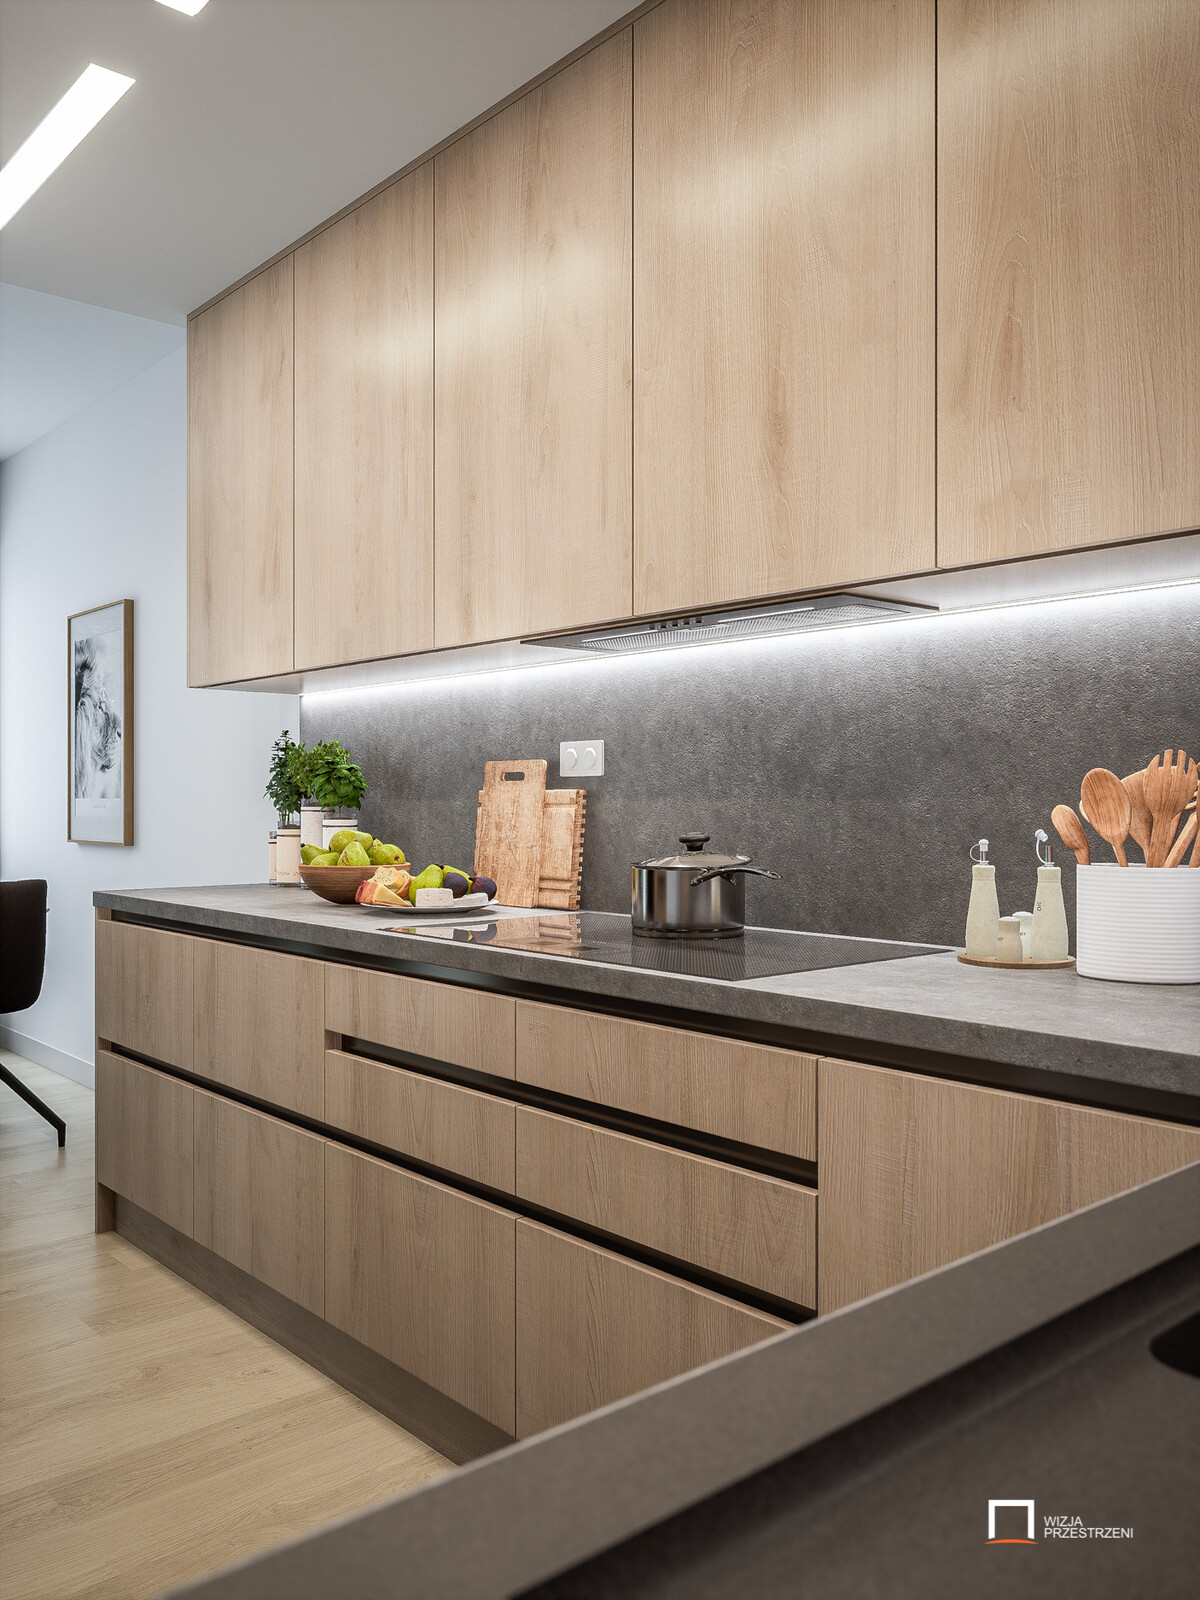 Variation of Modern Kitchen Interior ArchViz - RTX Unreal Engine / UE4